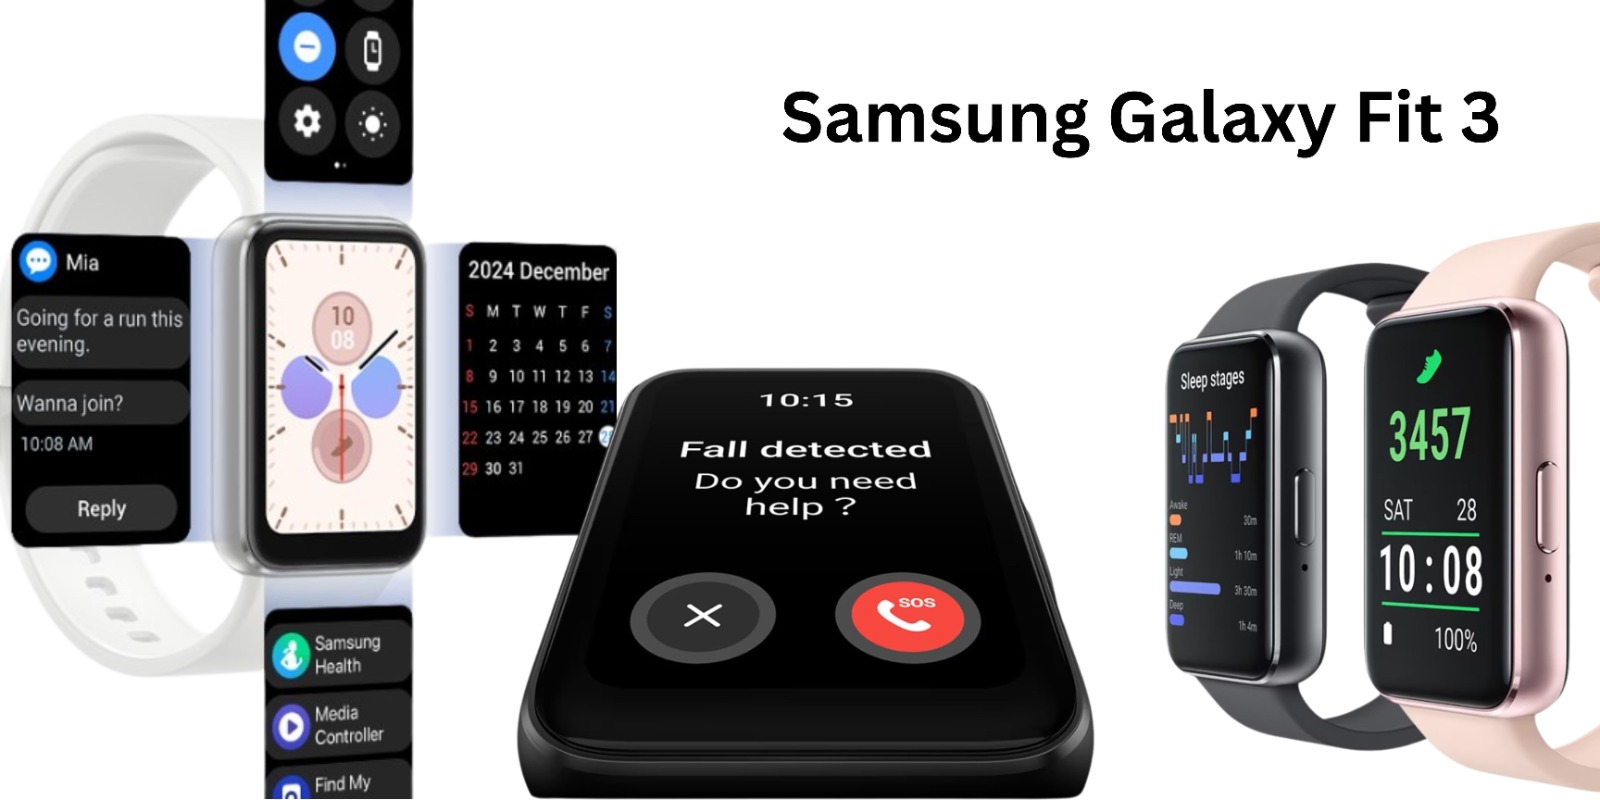 Jam Tangan Pintar Harga Terjangkau, Samsung Galaxy Fit 3 Bagaimana Spesifikasinya? Cek di Sini